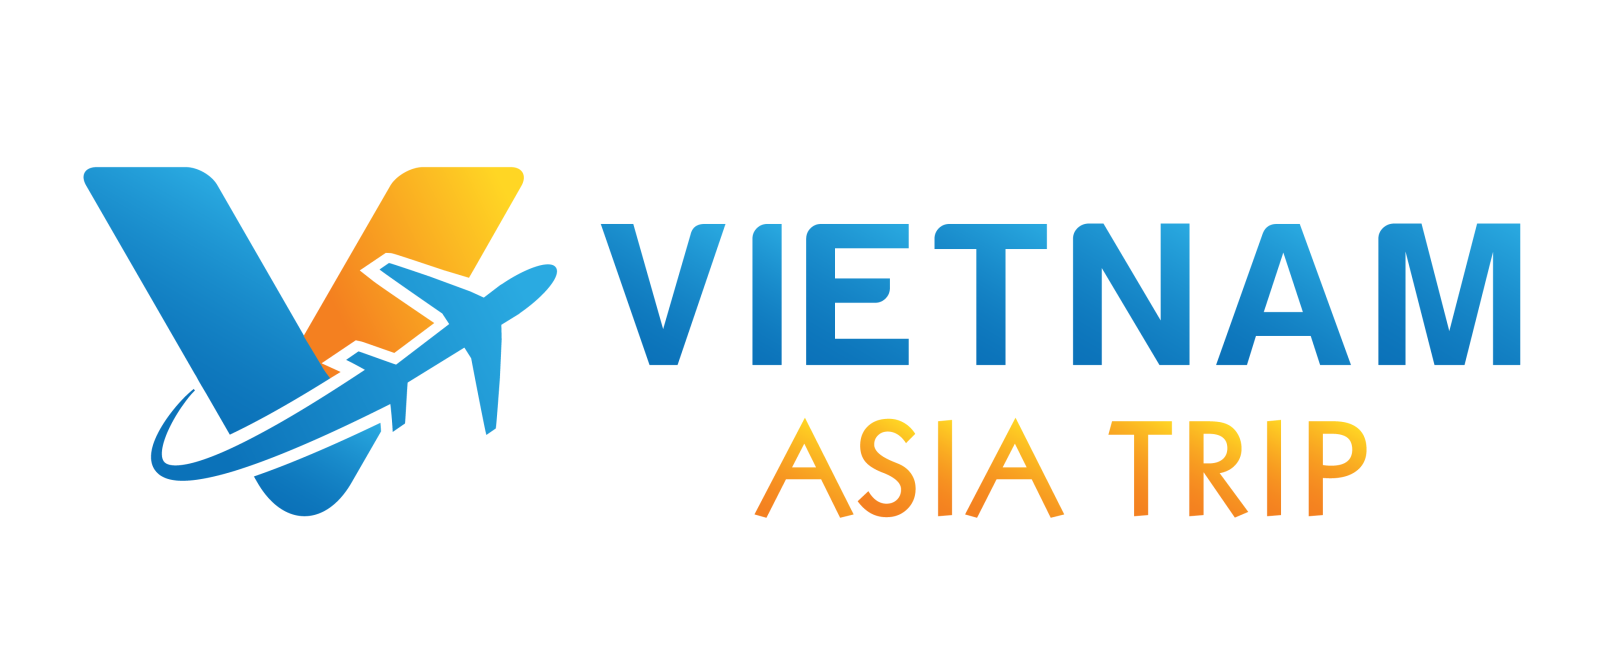 VNATRIP - Vietnam Asia Trip